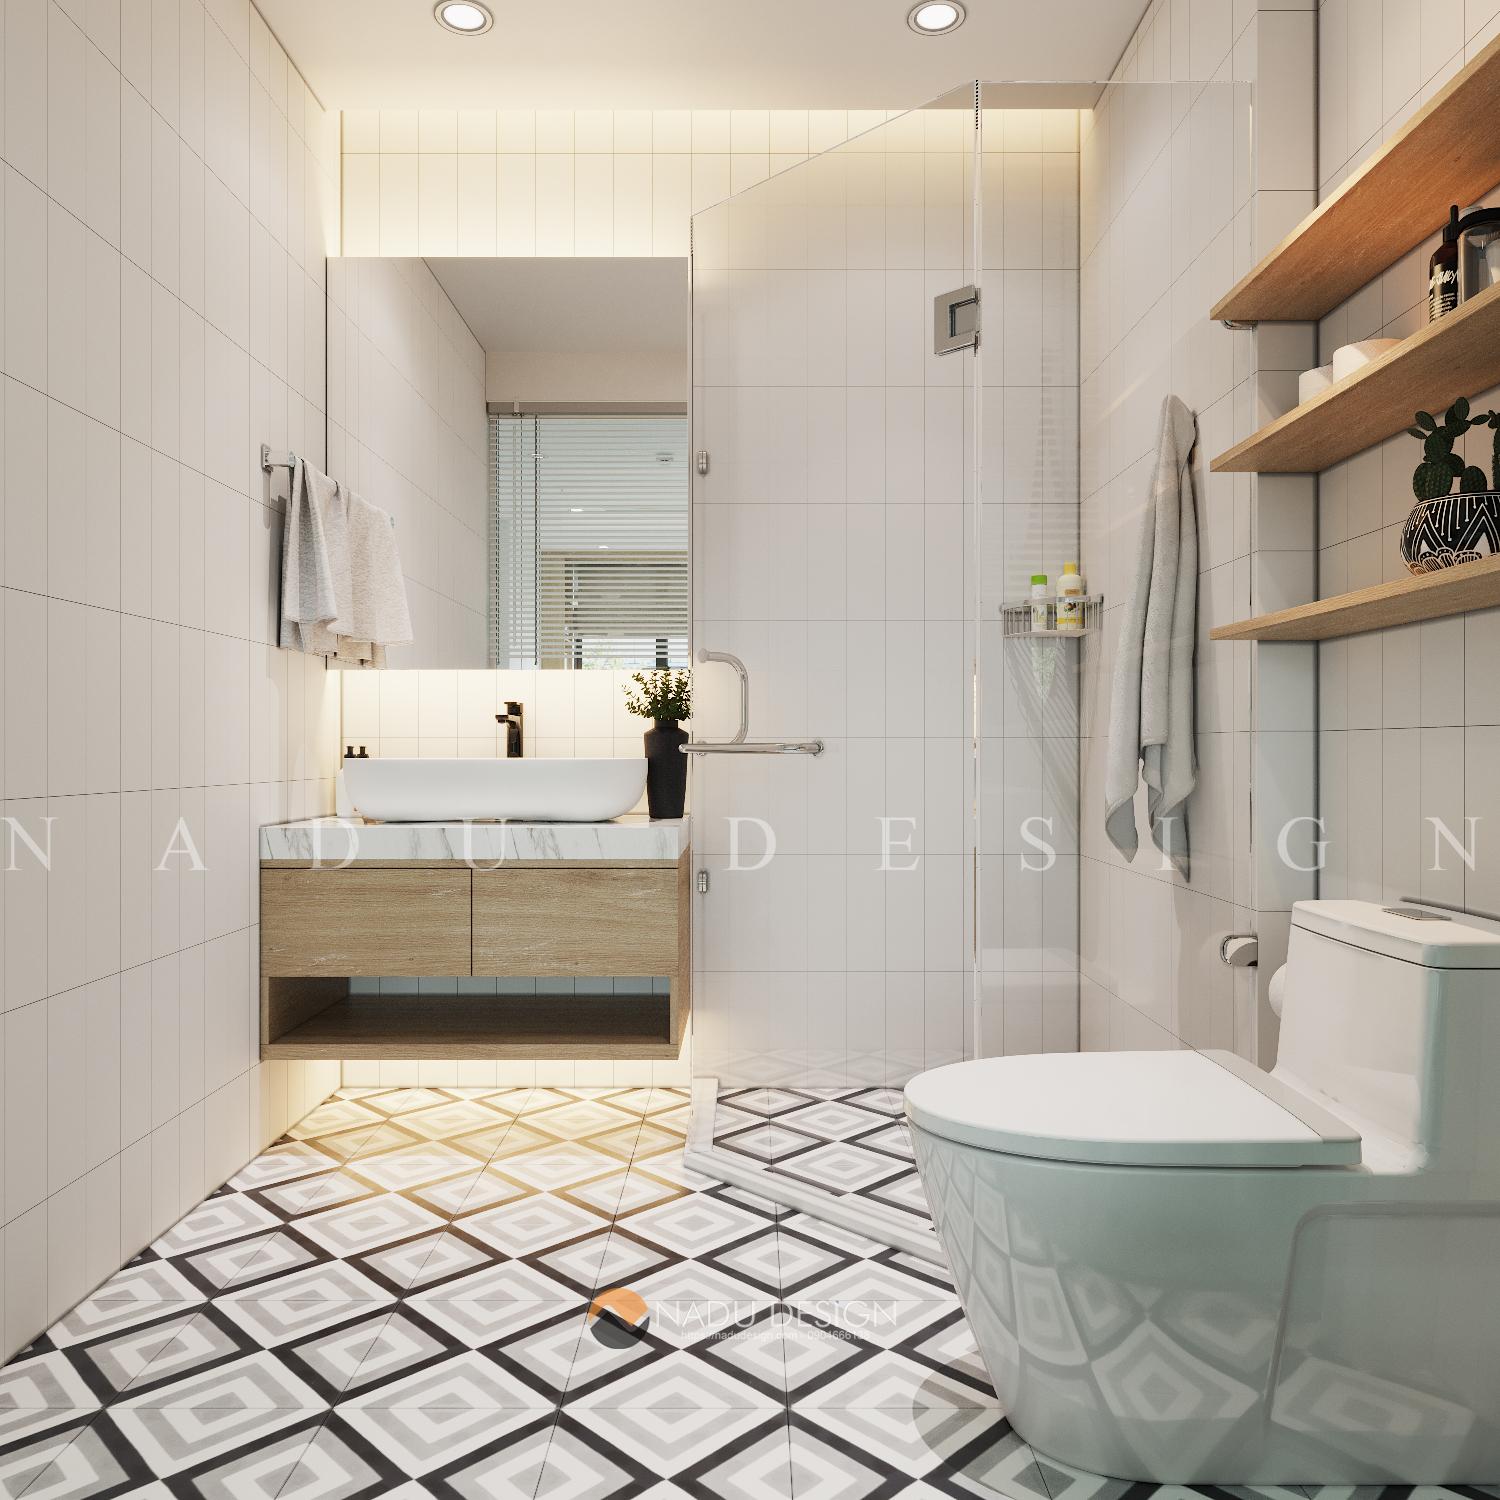 Thiết kế phòng tắm 4m2 sang trọng tiện nghi cho mọi nhà